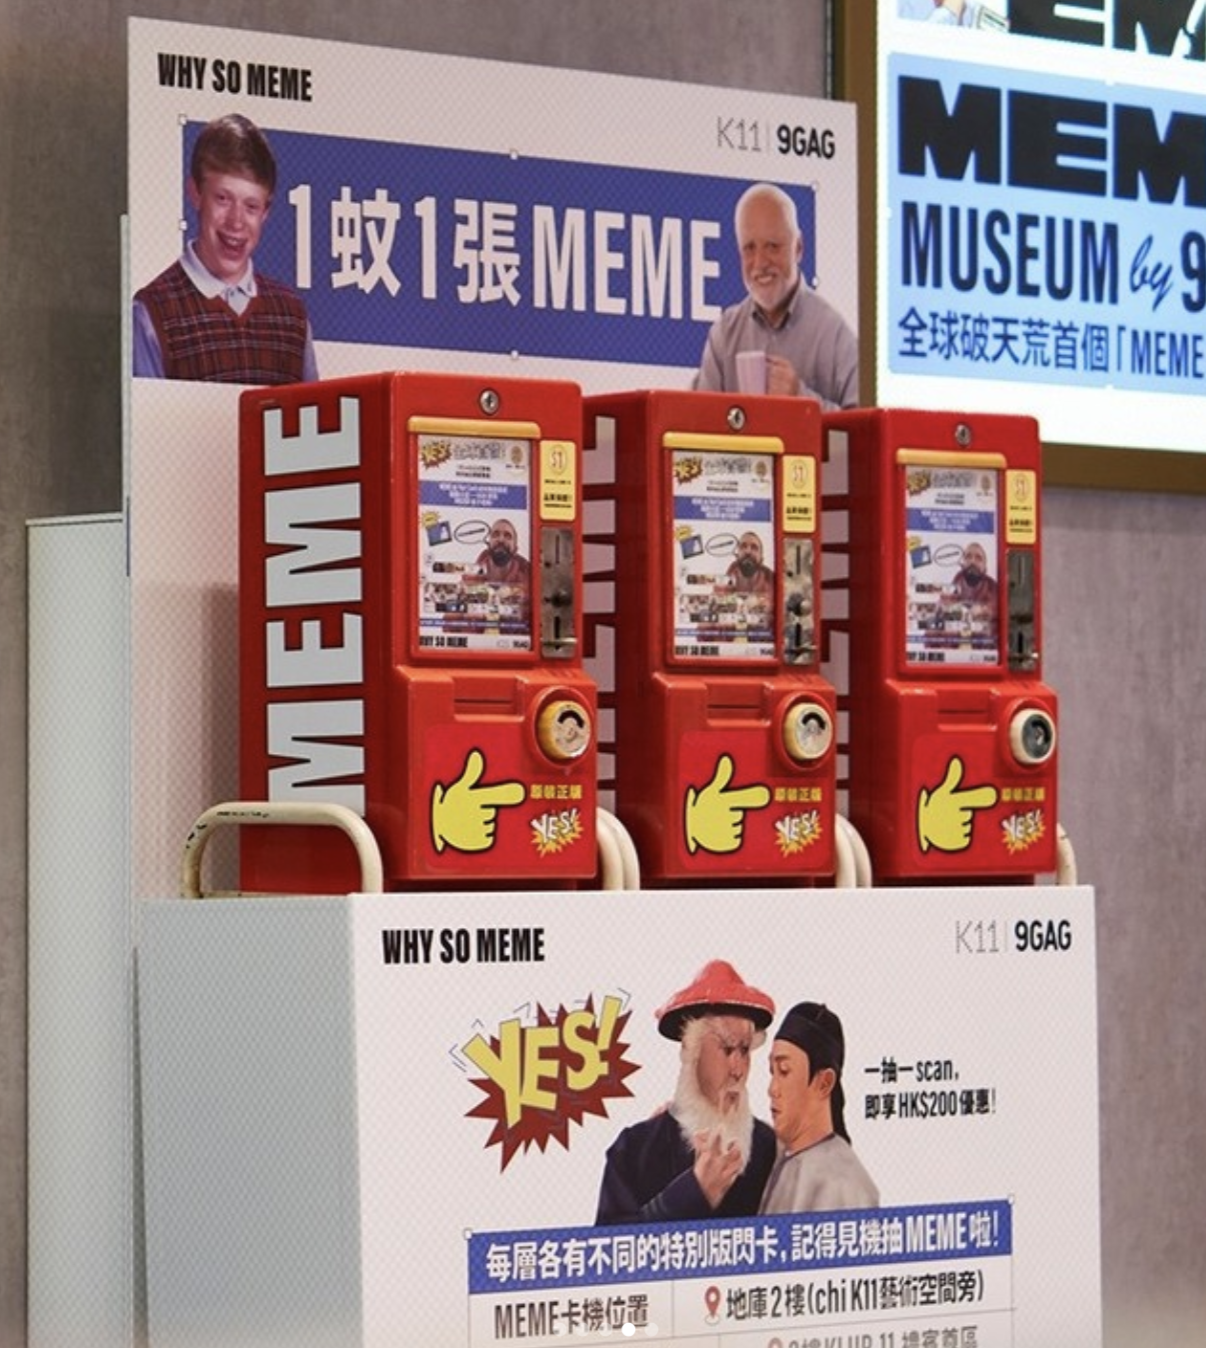 “MEME Museum” Pertama Di Dunia Karya 9GAG